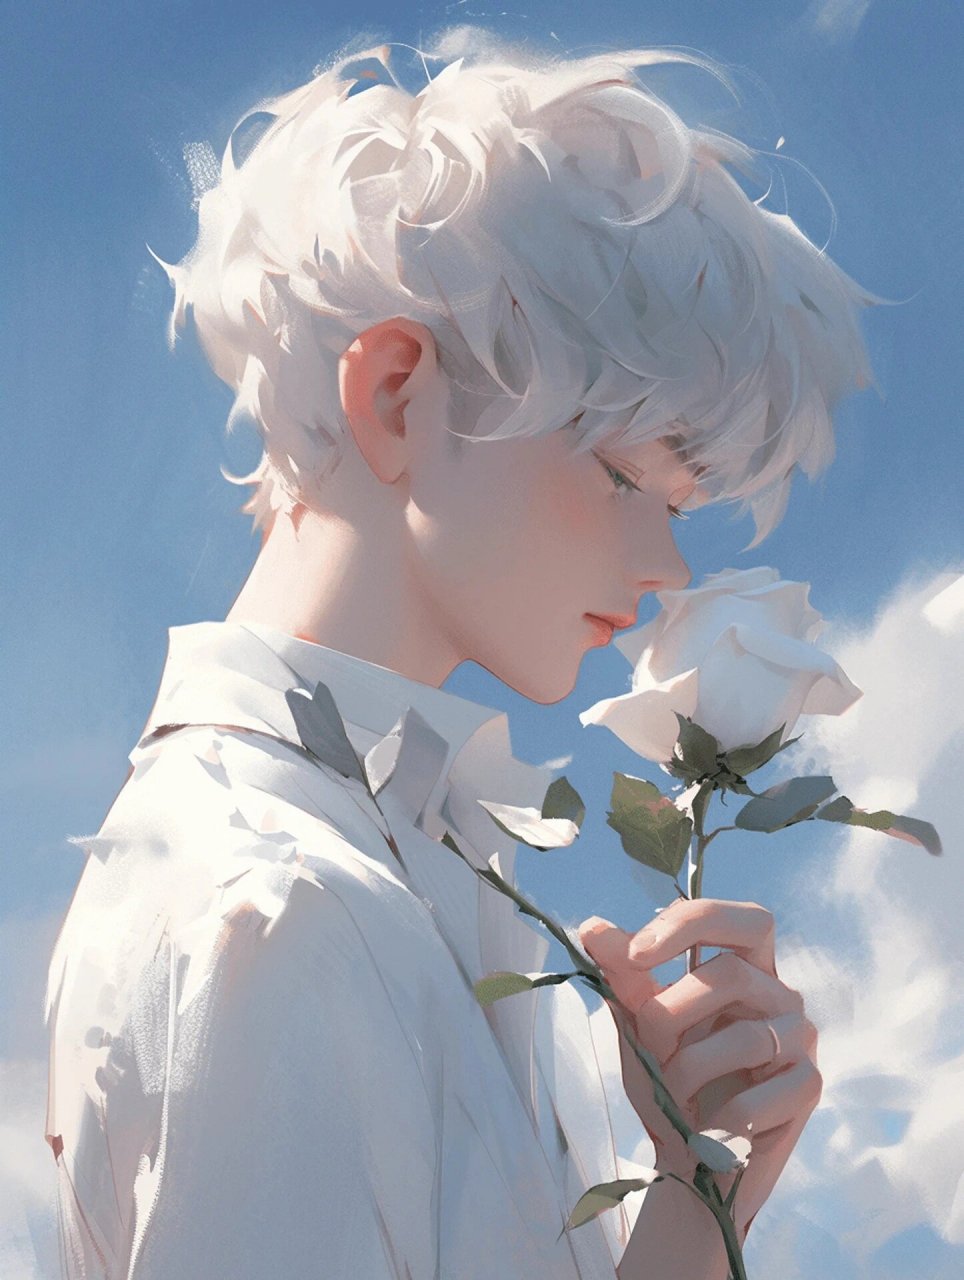 【玫瑰男生头像】手持玫瑰,永恒爱意 白色玫瑰,纯白无暇